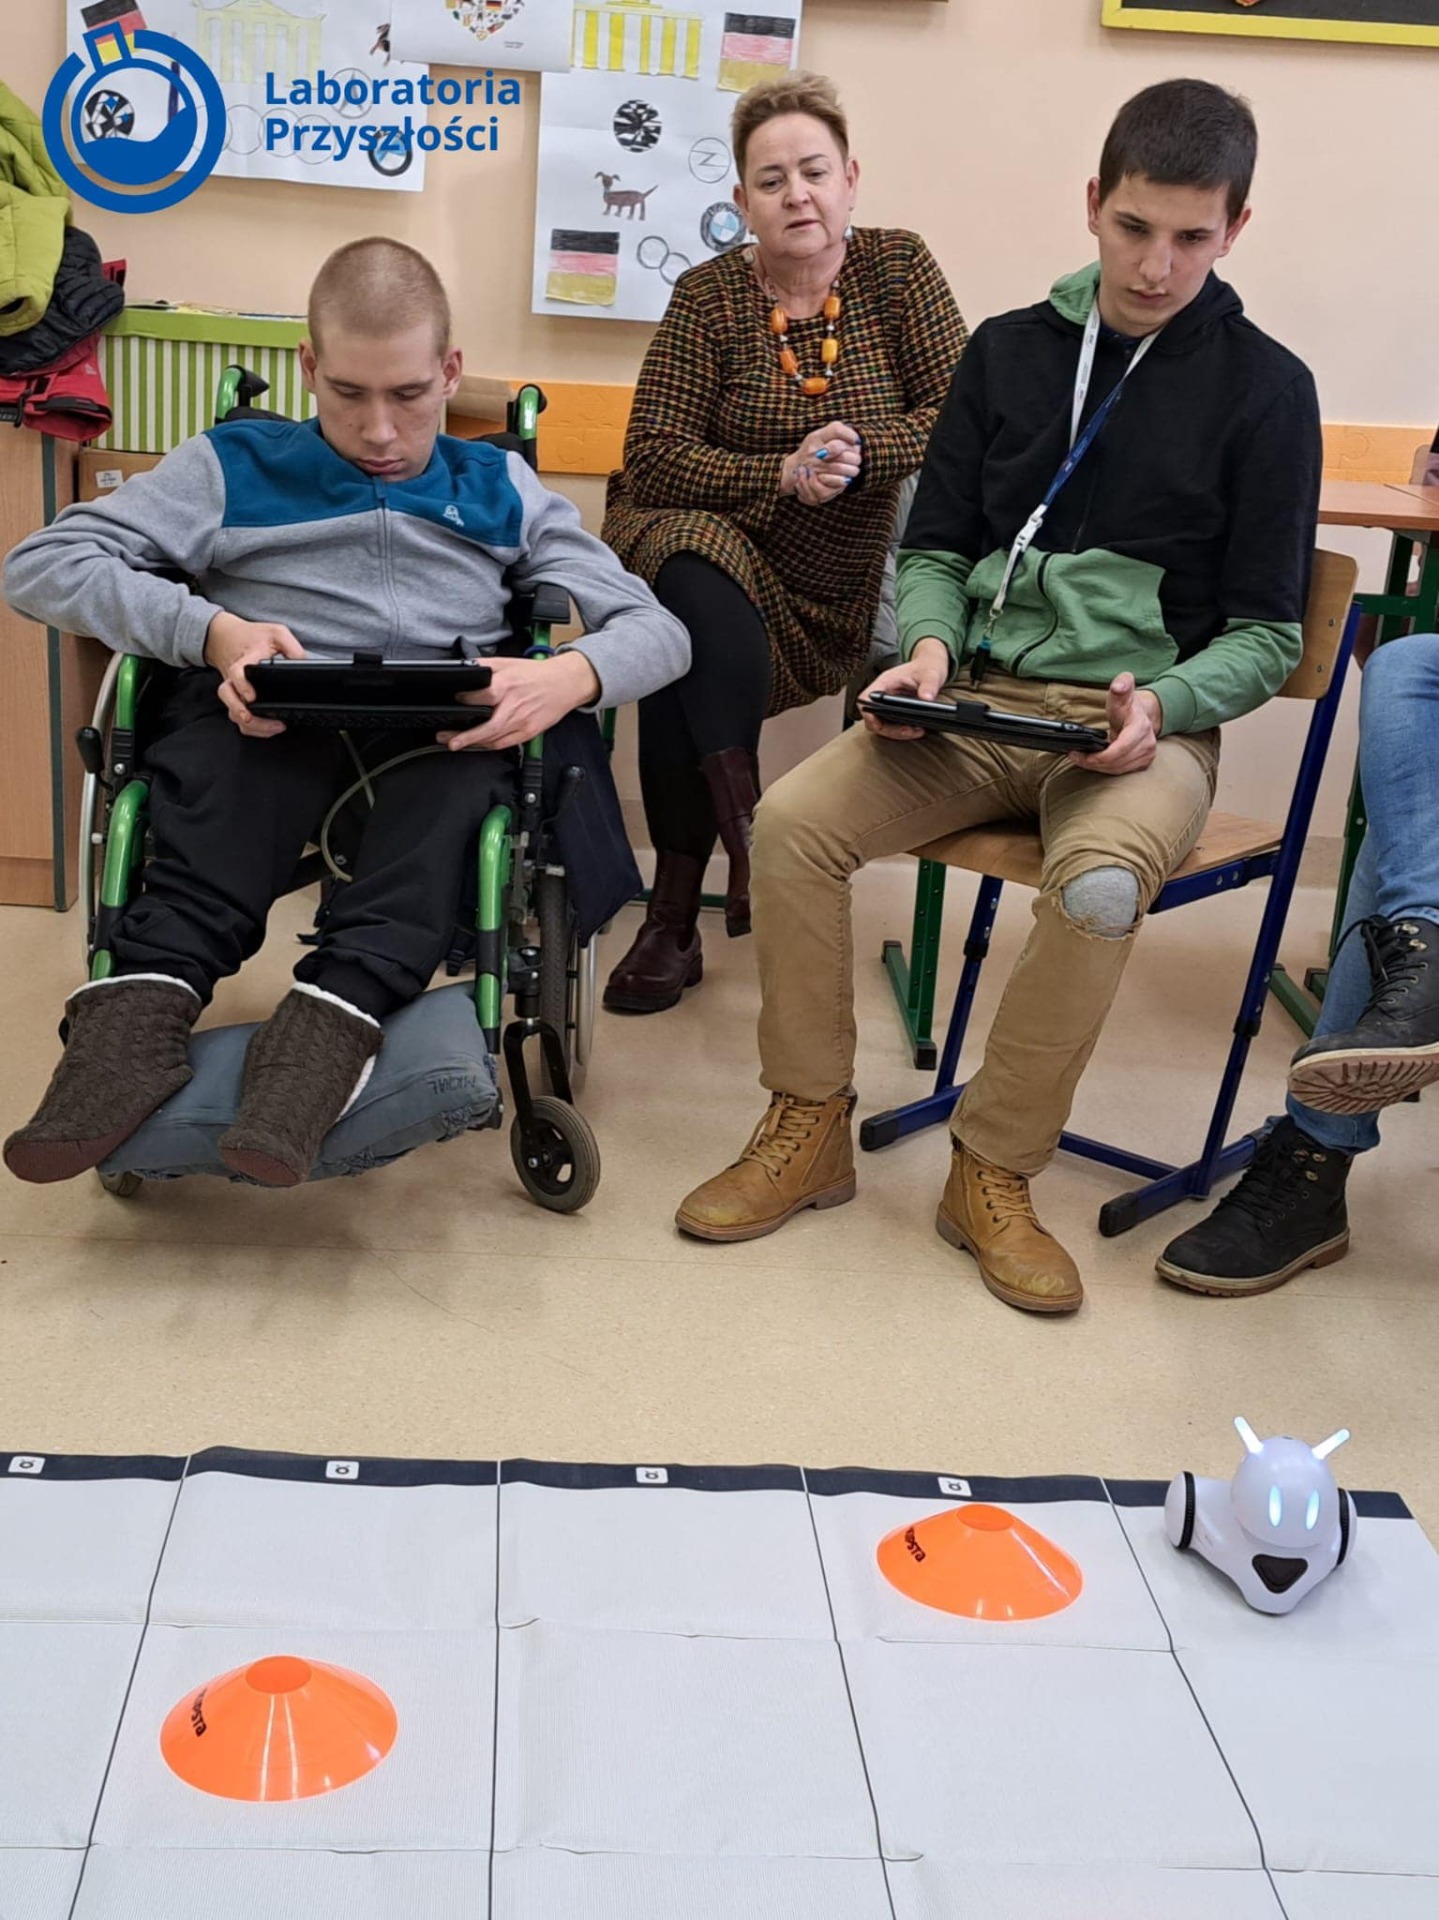 Michał i Norbert, uczniowie klasy 3 Szkoły Przysposabiającej do Pracy wraz z Panią Małgosią, podczas zajęć z robotami.